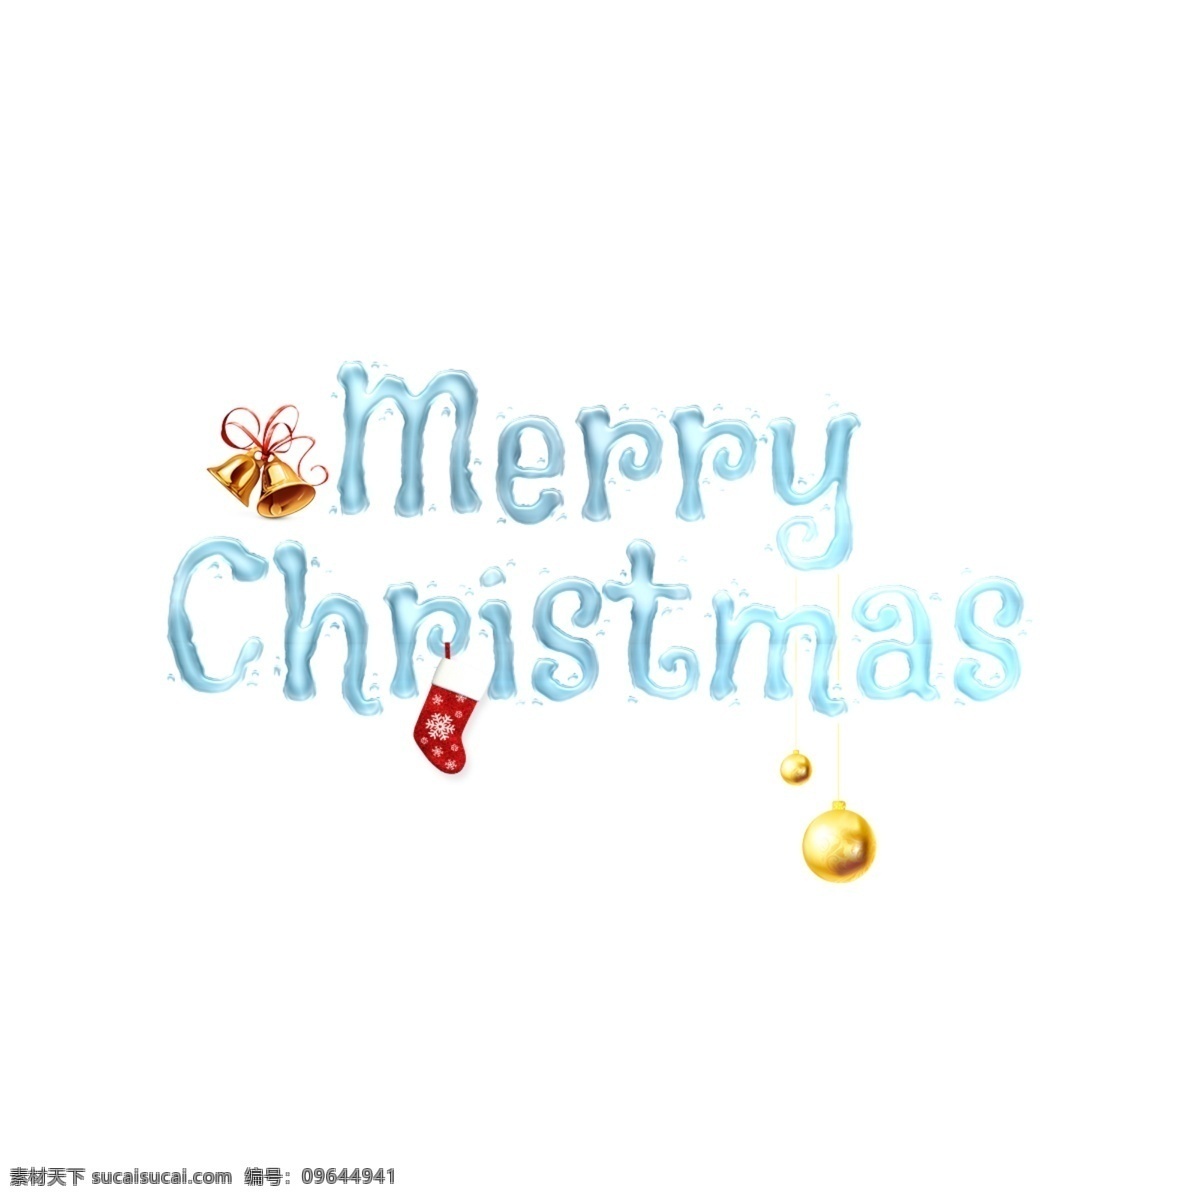 圣诞节 礼物 圣诞快乐 抽象 字体 圣诞节快乐 快活 圣诞 礼品 节日 欢乐 海关 钟声 圣诞老人 滑雪 袜子 凉 华美 背景 抽象字体 可编辑的字体 书法